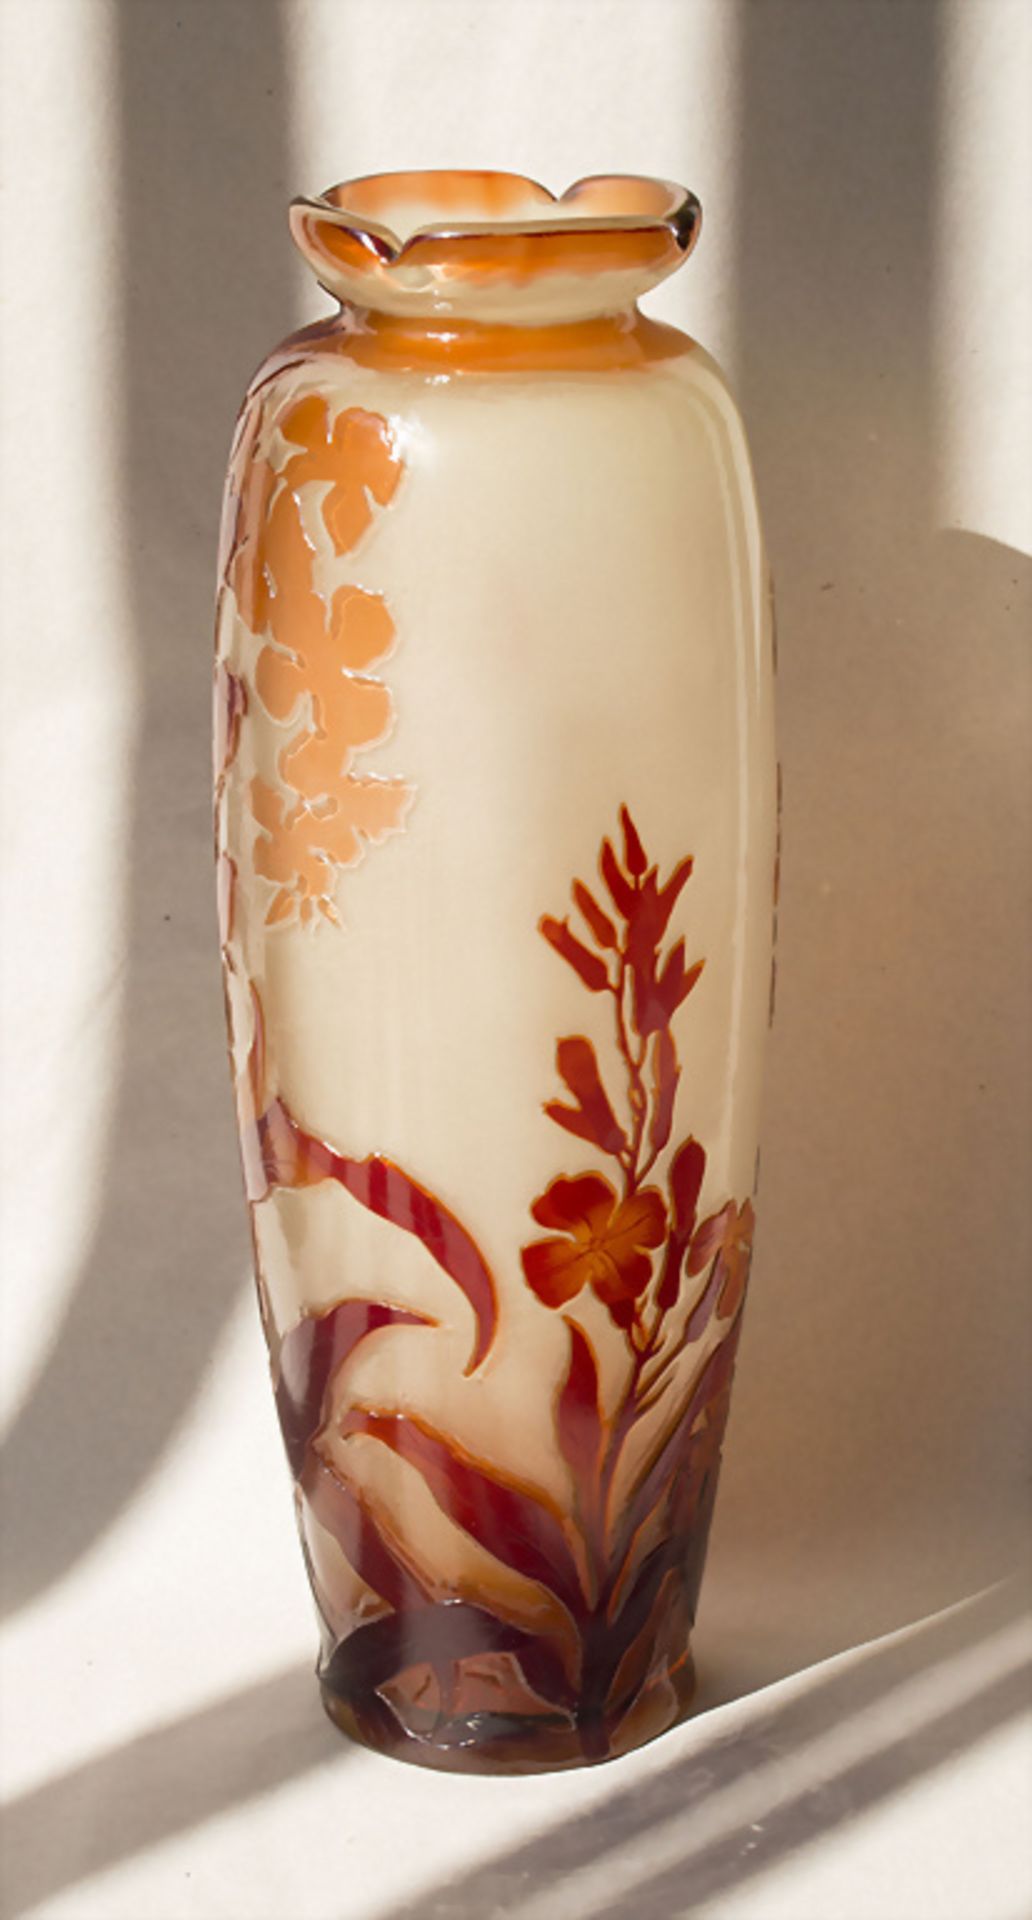 Jugendstil Vase / An Art Nouveau vase, Emile Gallé, Ecole de Nancy, 1898-1904 - Bild 4 aus 6